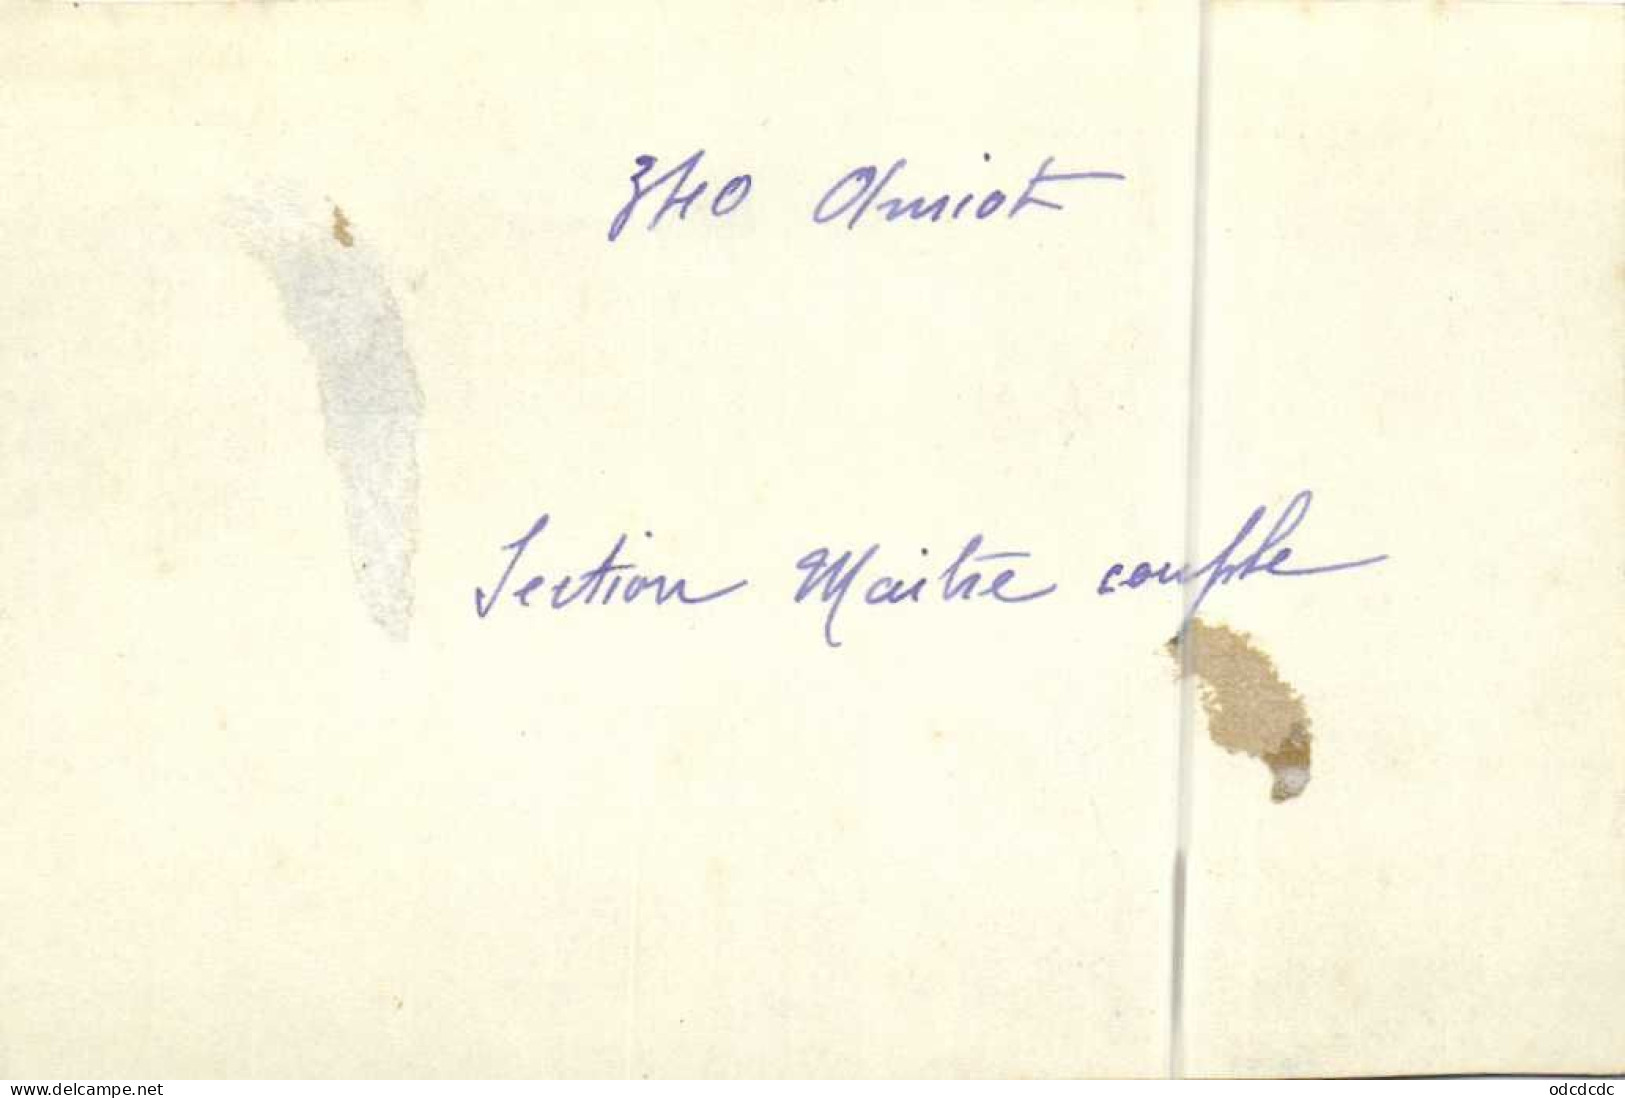 Pgoto 340 Amiot Section Maitre Couple RV - 1919-1938: Entre Guerras